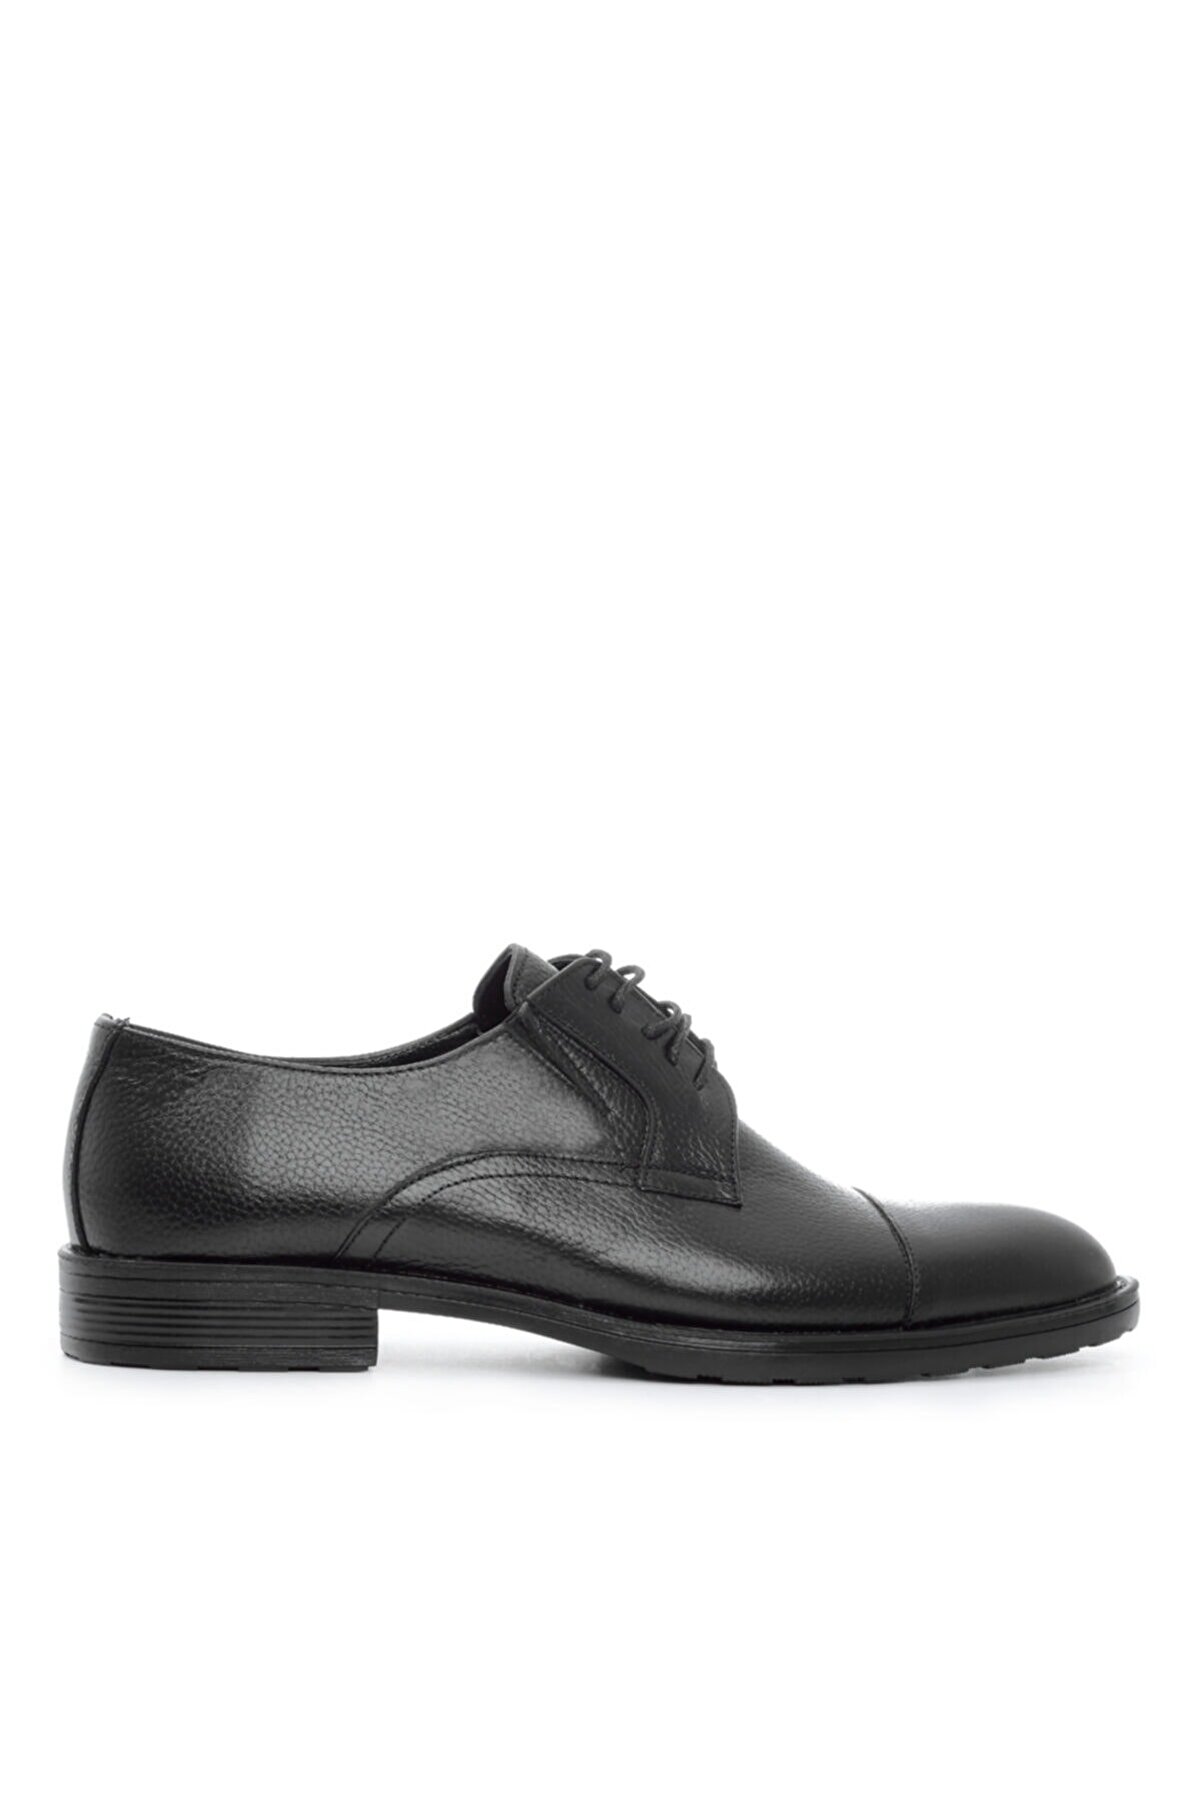 Kemal Tanca Erkek Derı Klasik Ayakkabı